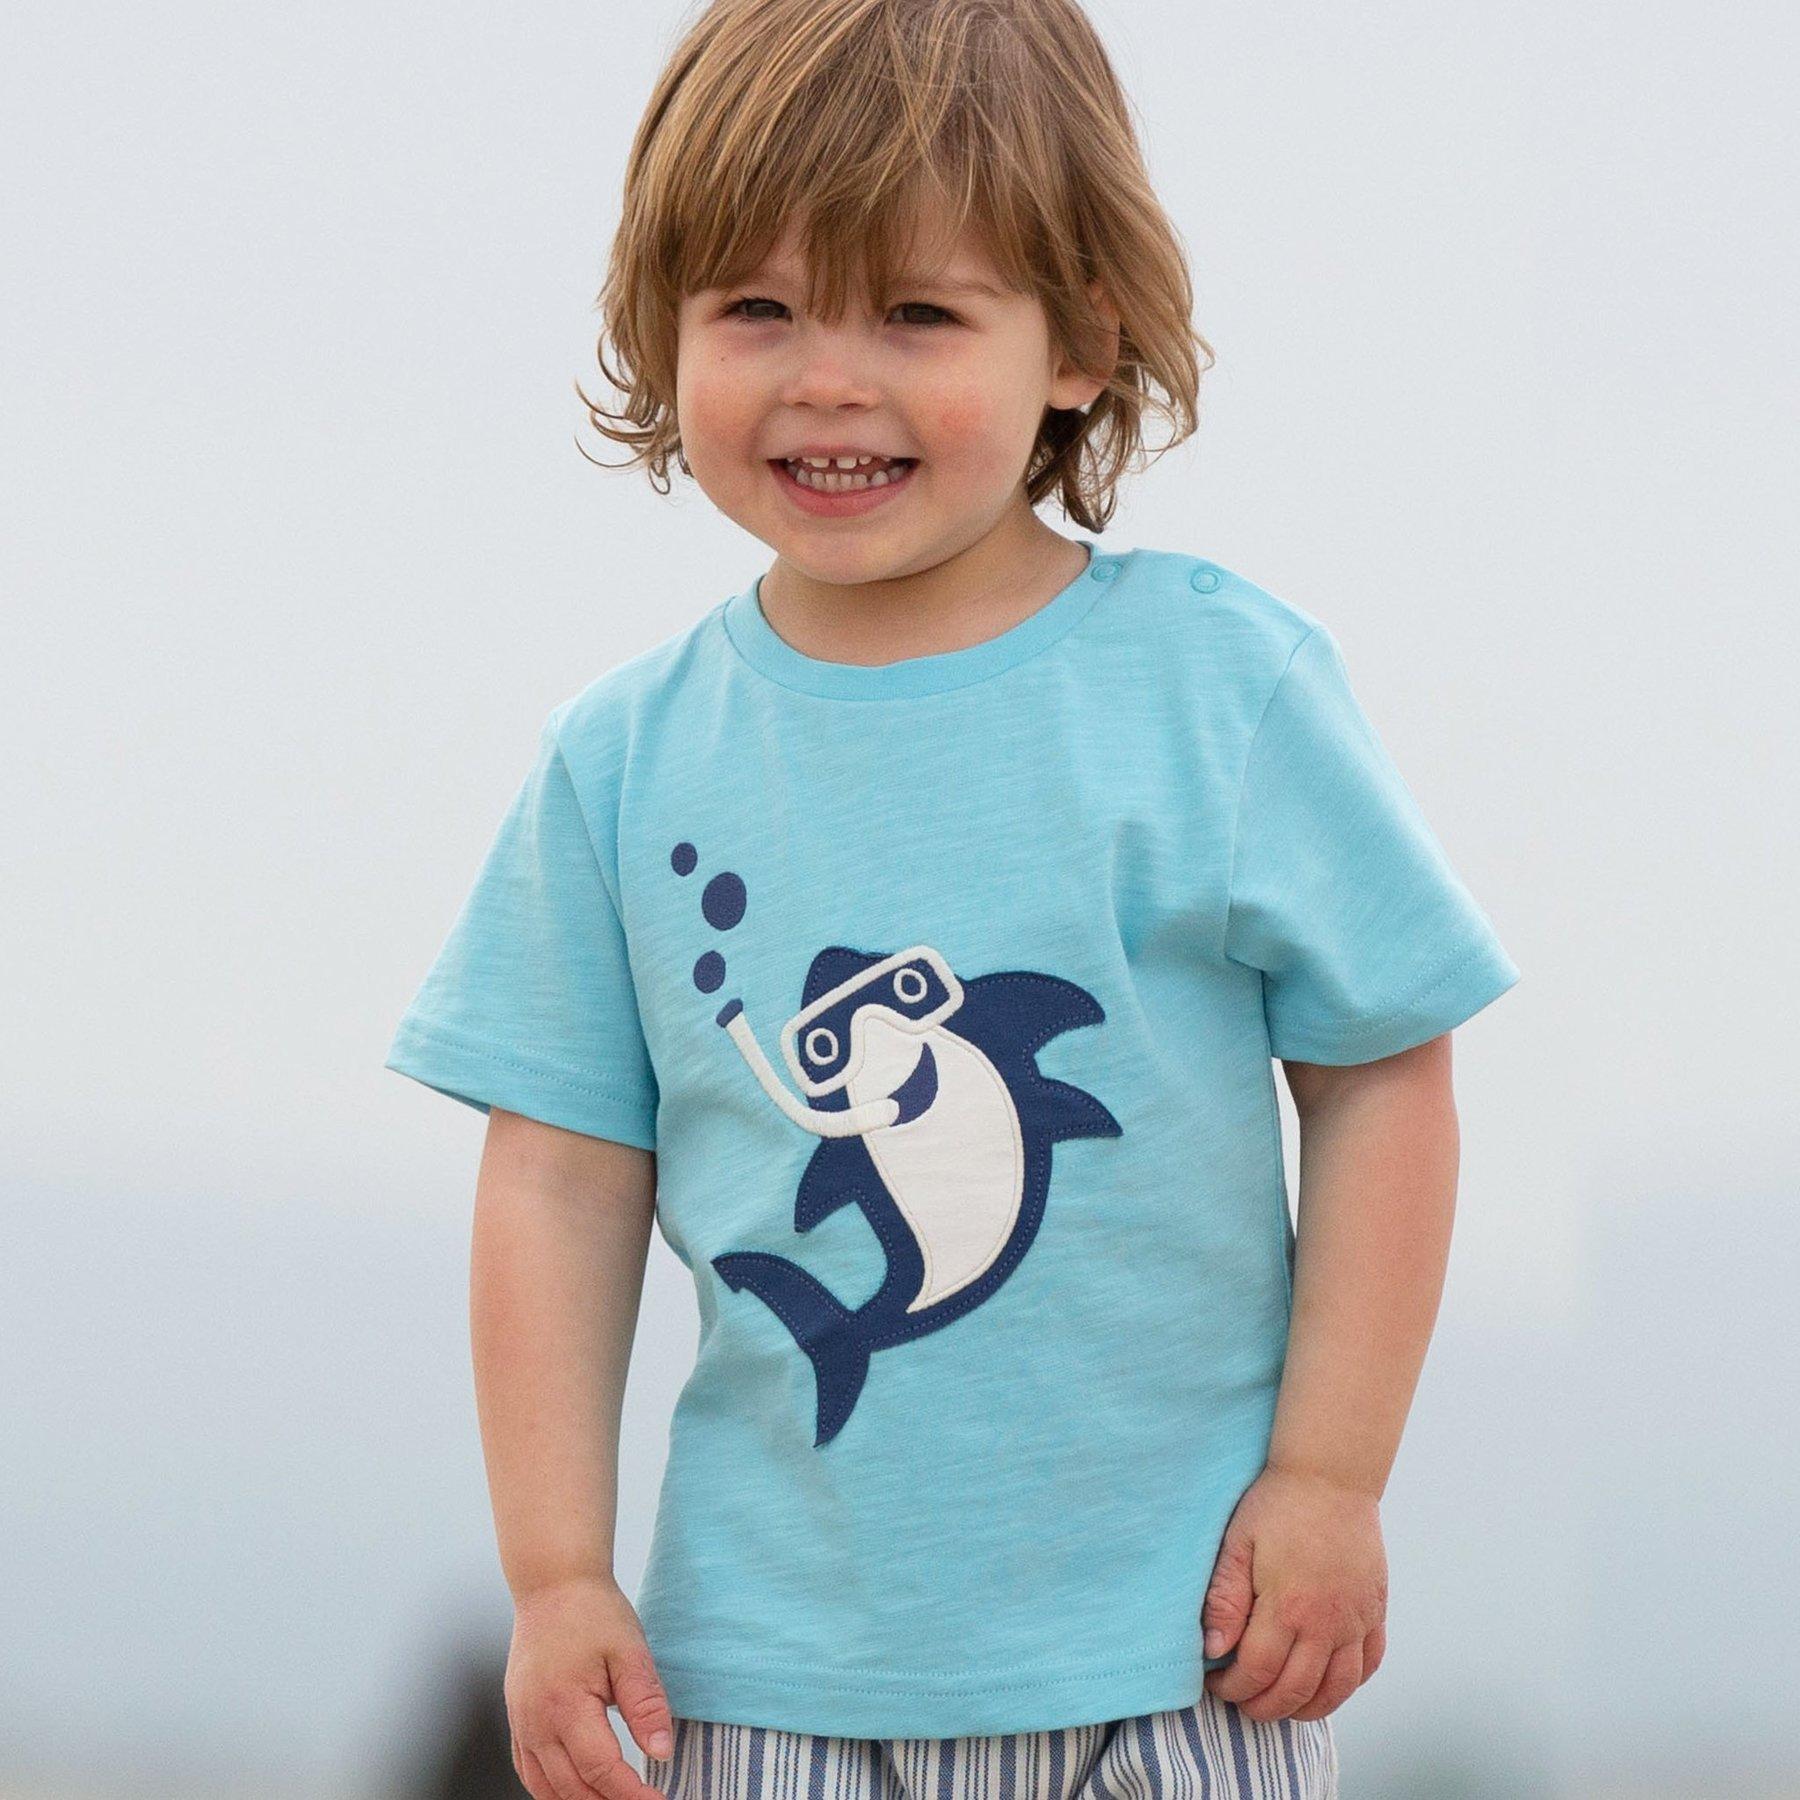 Boy wearing Kite Clothing Snorkel Shark T-Shirt